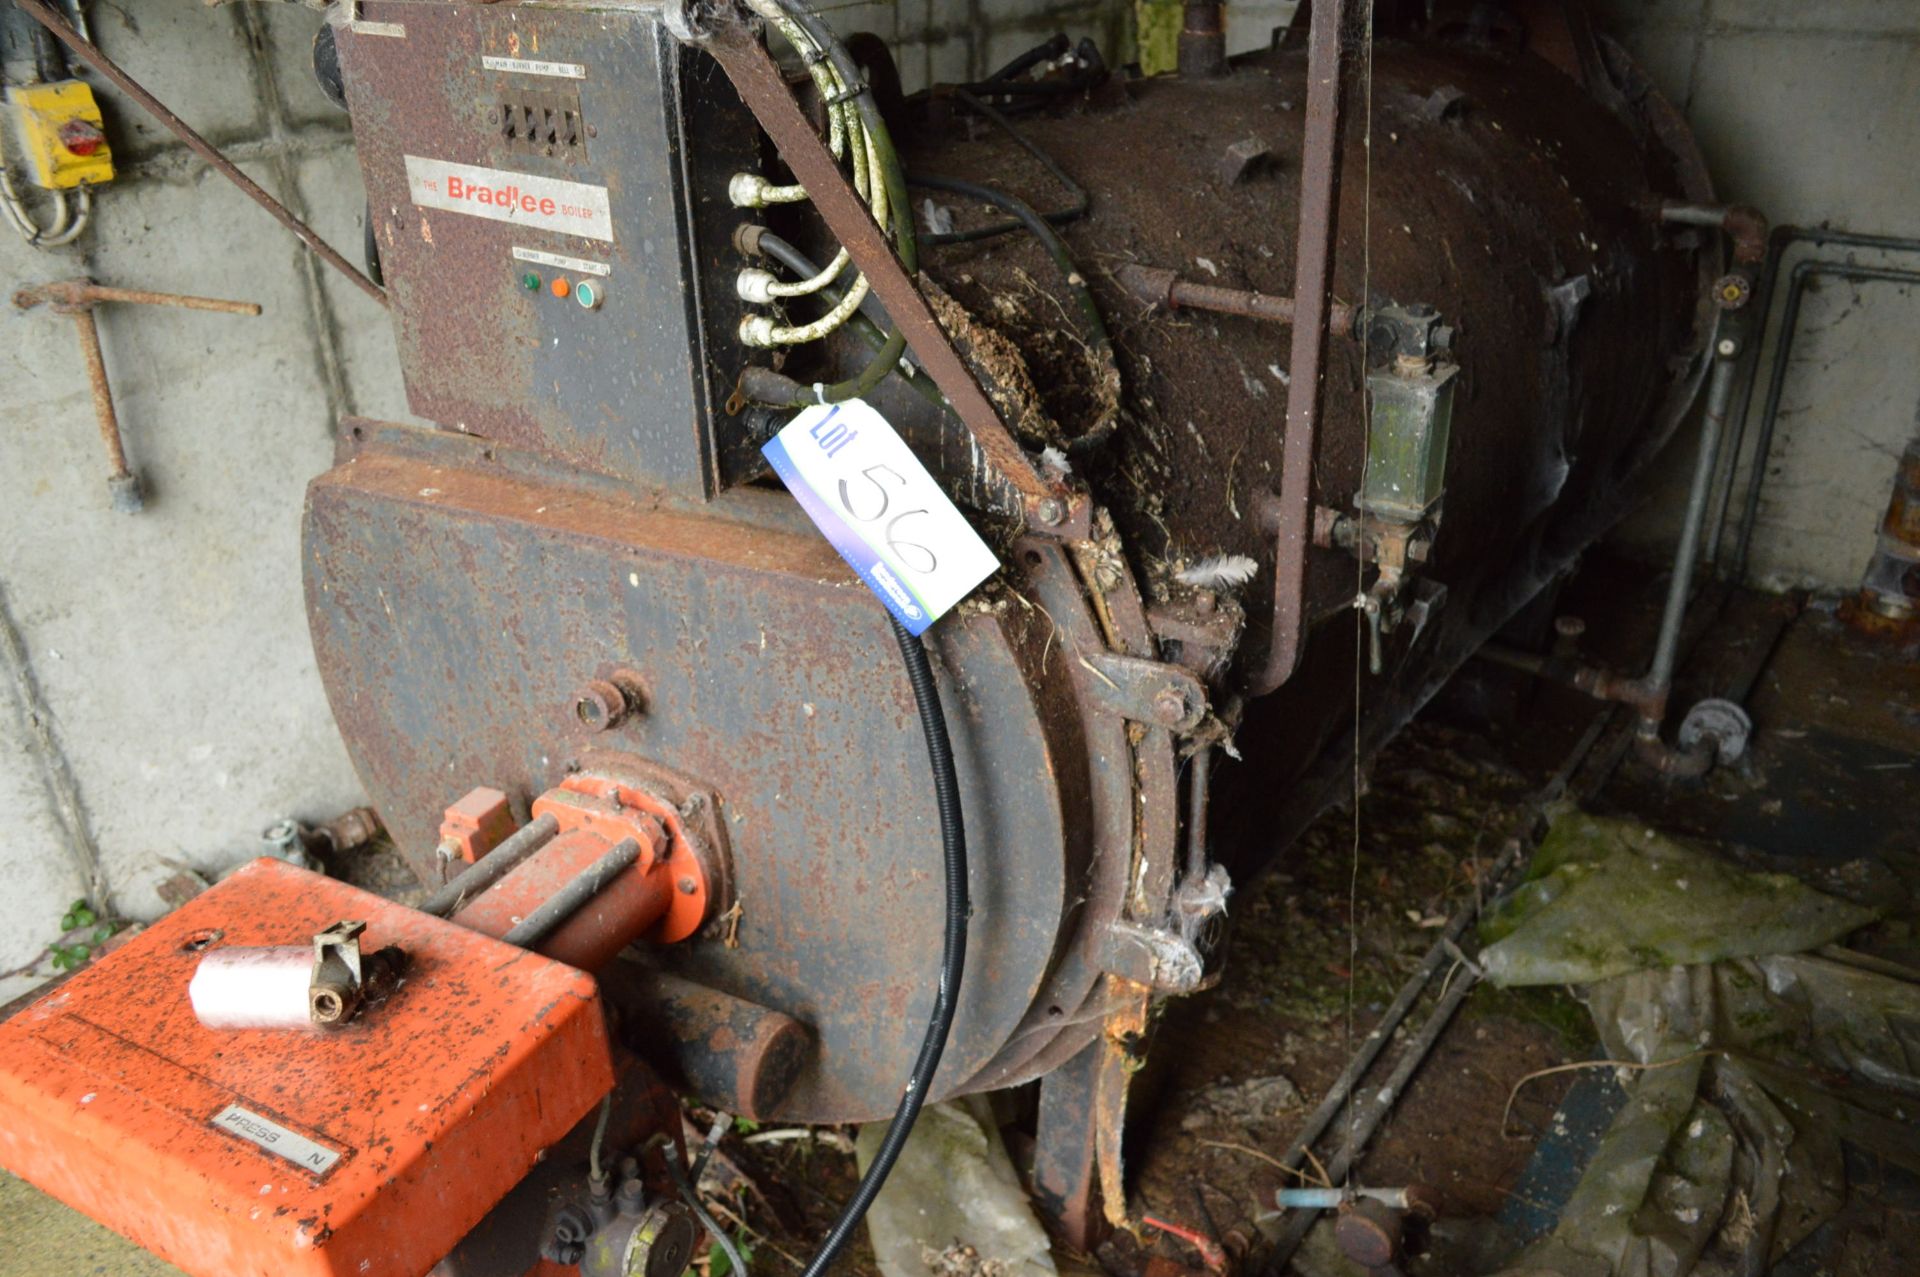 Bradlee S46B Oil Fired Steam Boiler, serial no. S784